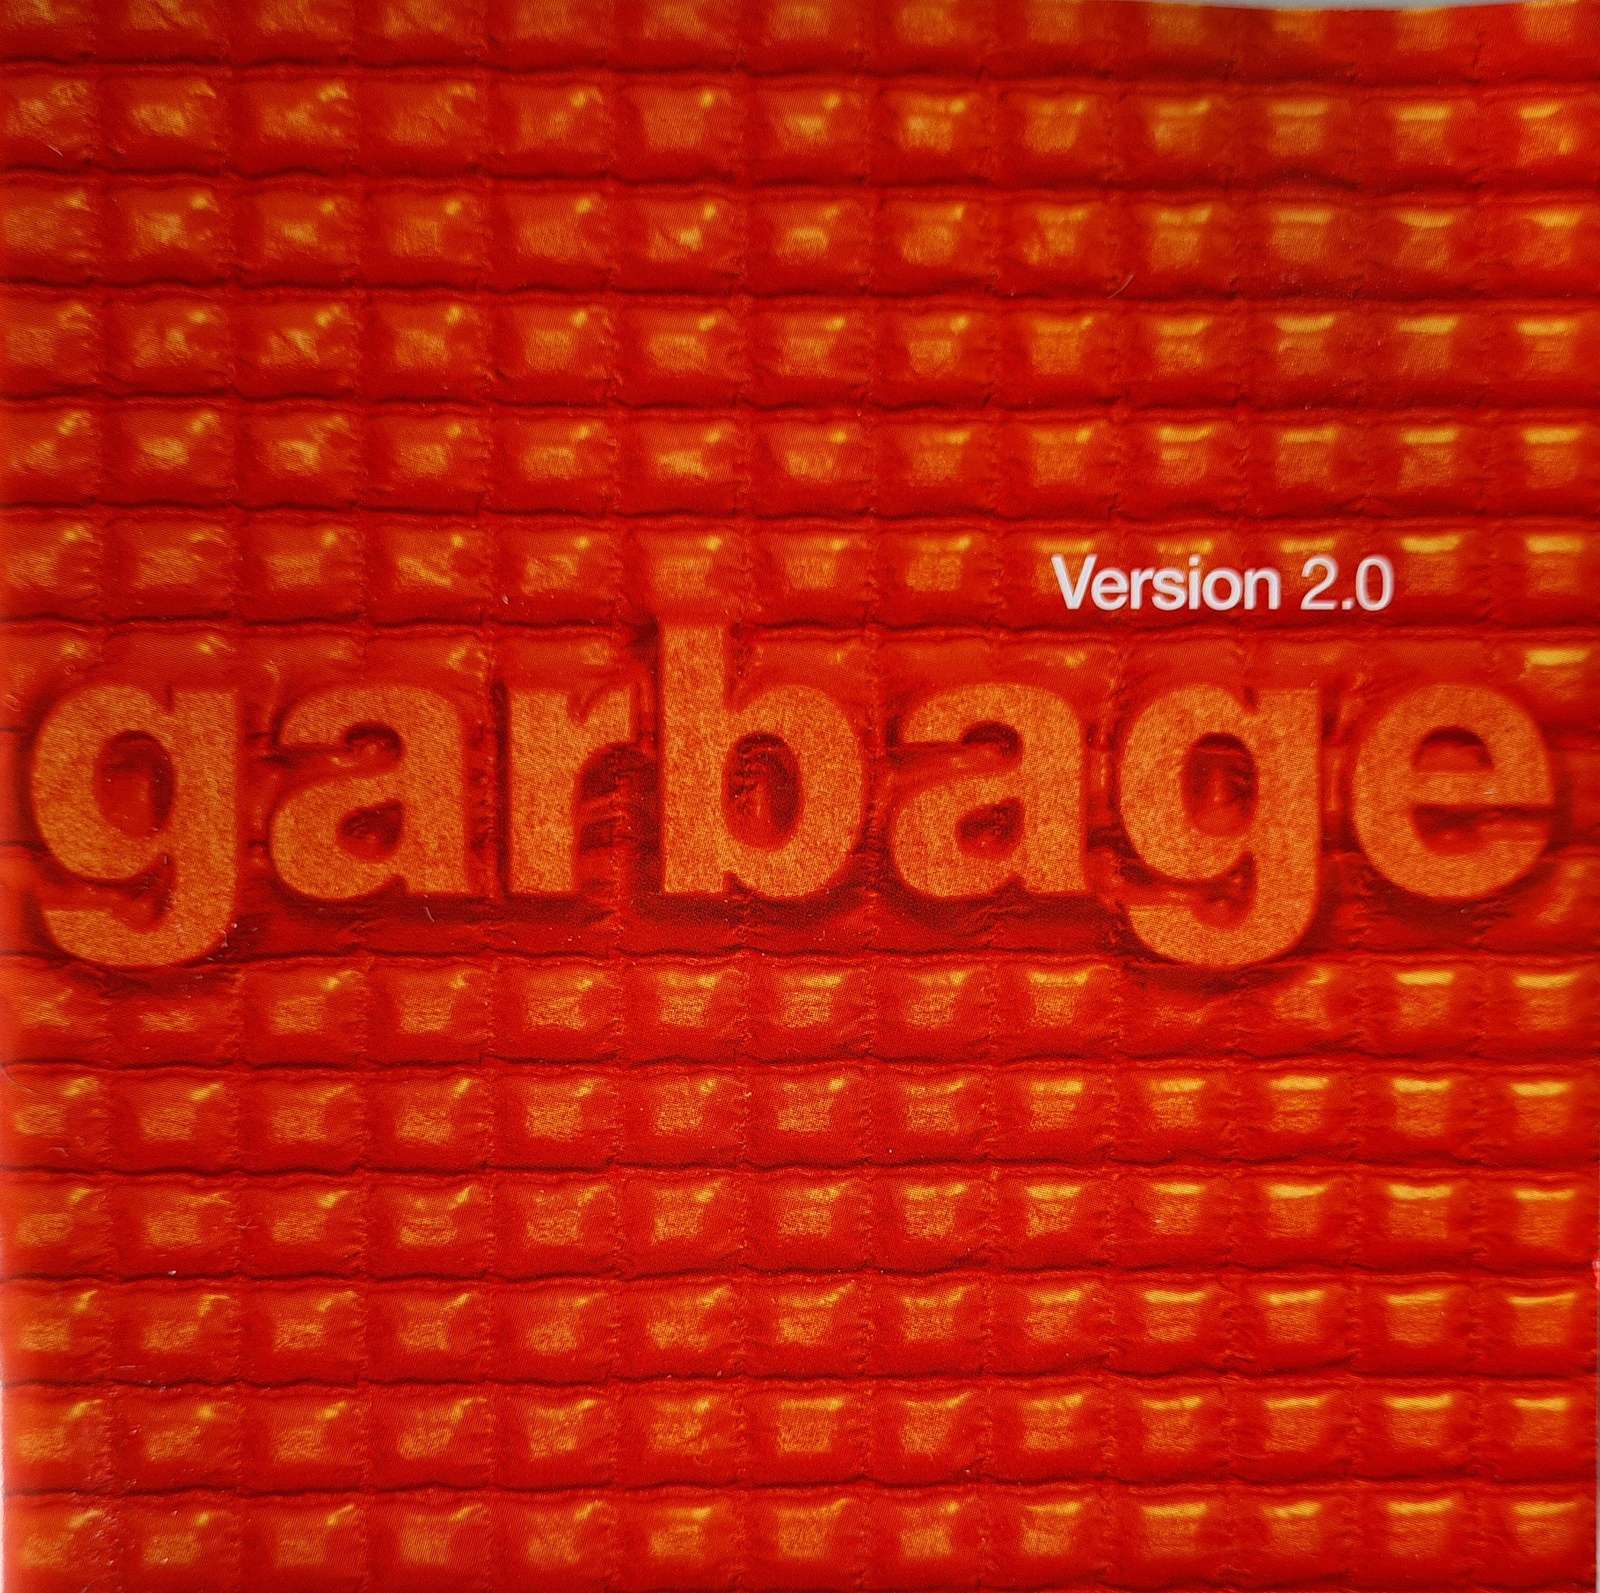 Garbage - Version 2.0 (CD)